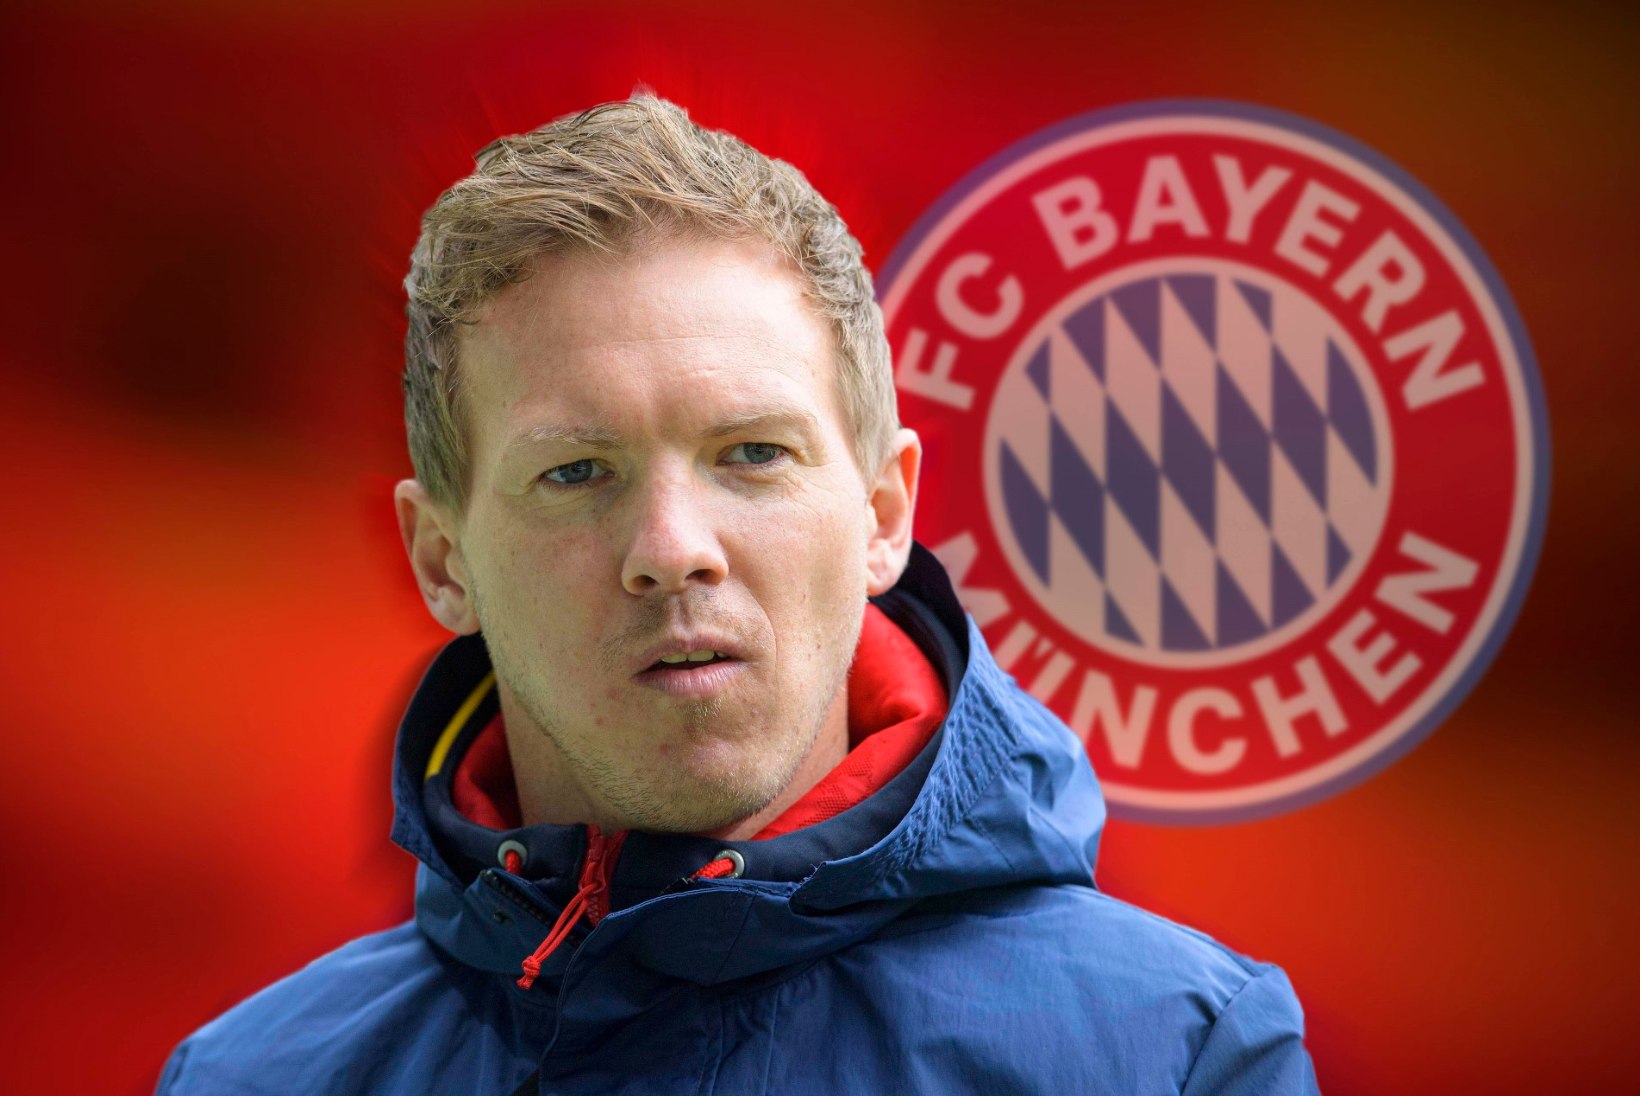 UUS MAAILMAREKORD: Bayern maksab peatreeneri ülemineku eest ennenägematu summa